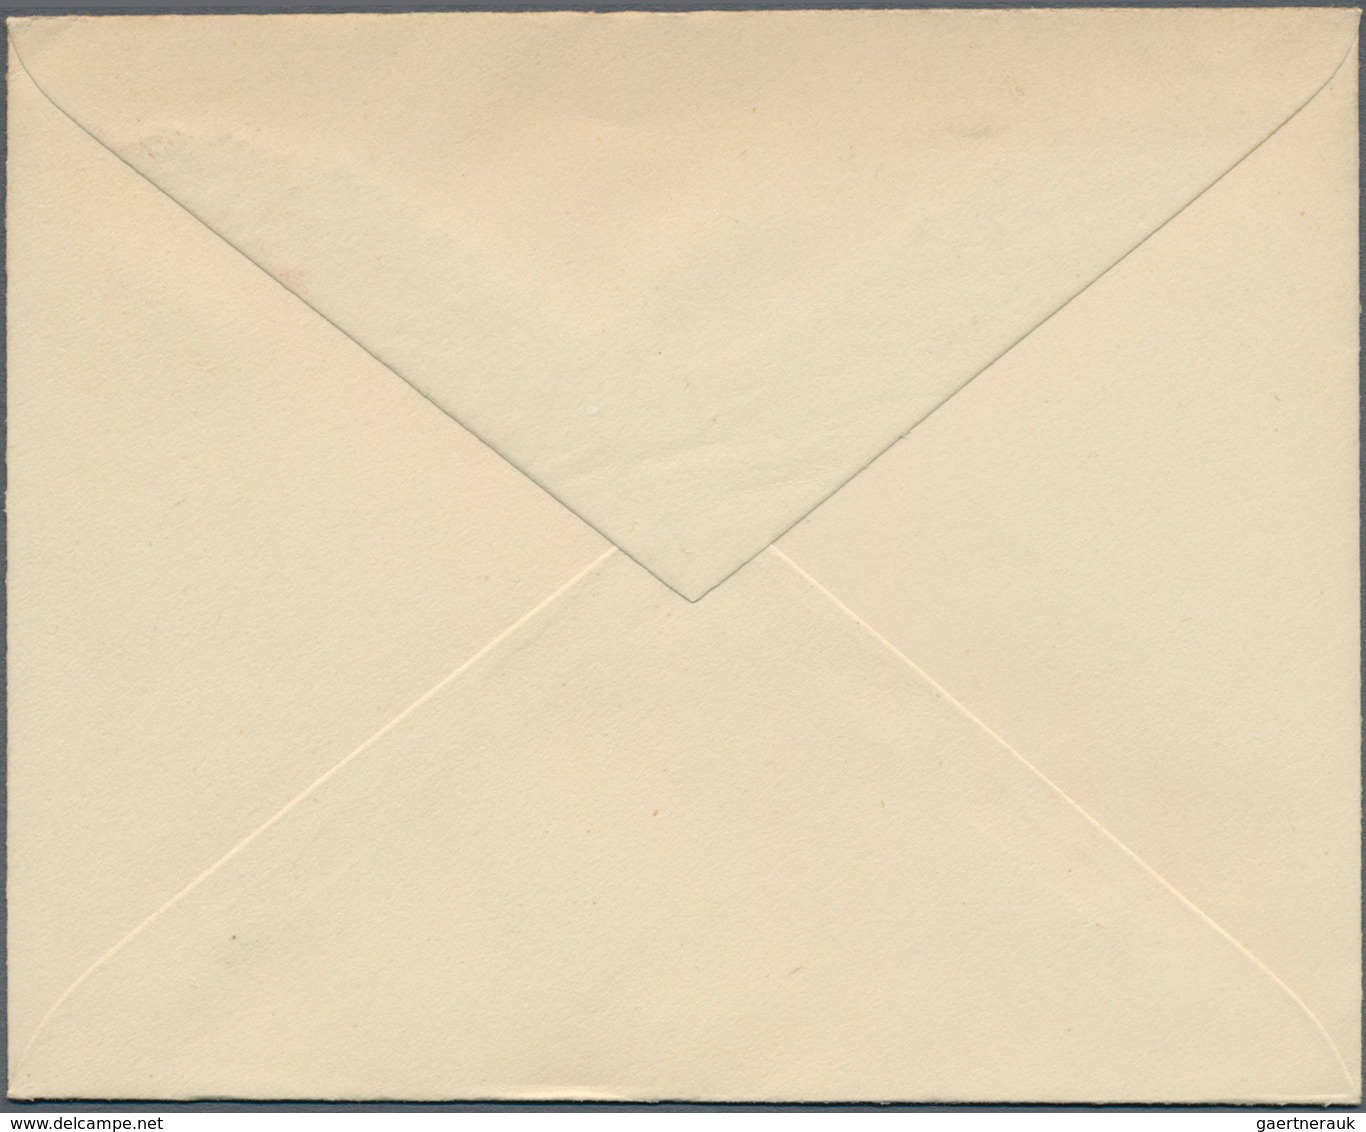 05992 Malaiische Staaten - Kelantan: 1935, 5 C Red-brown Sultan Ismail Postal Stationery Envelope, Ovp SPE - Kelantan